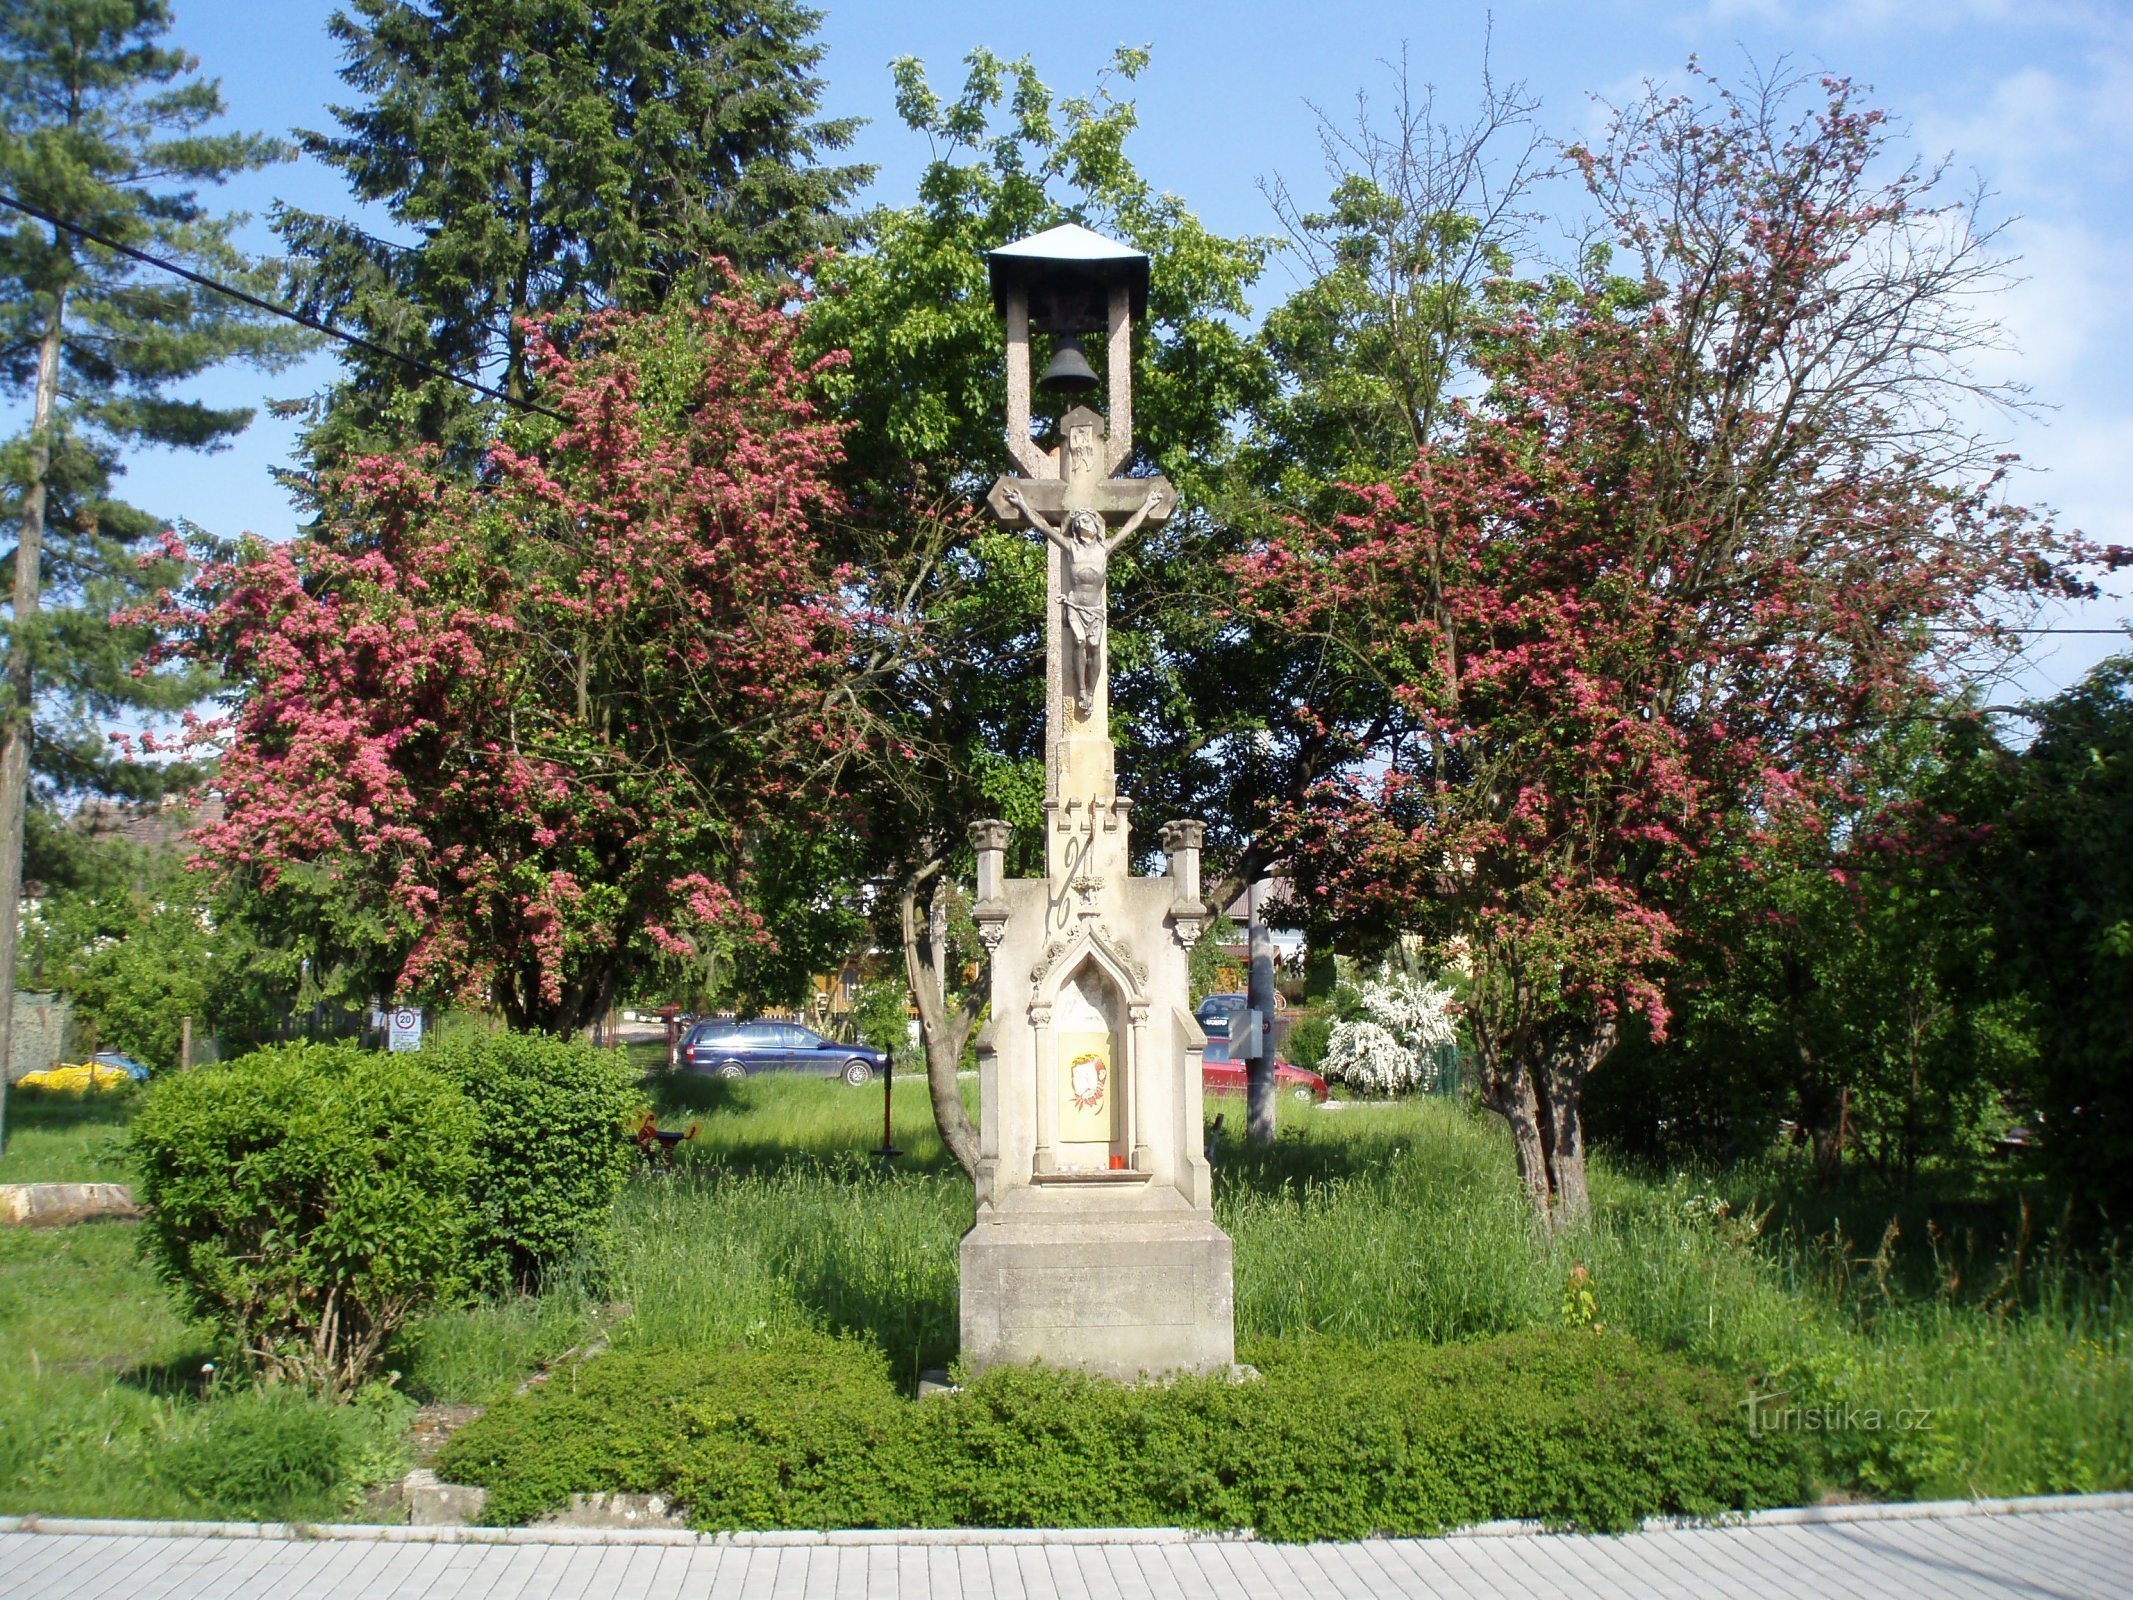 Zvonička s kamenným křížem v Roudničce (Hradec Králové, 25.5.2010)